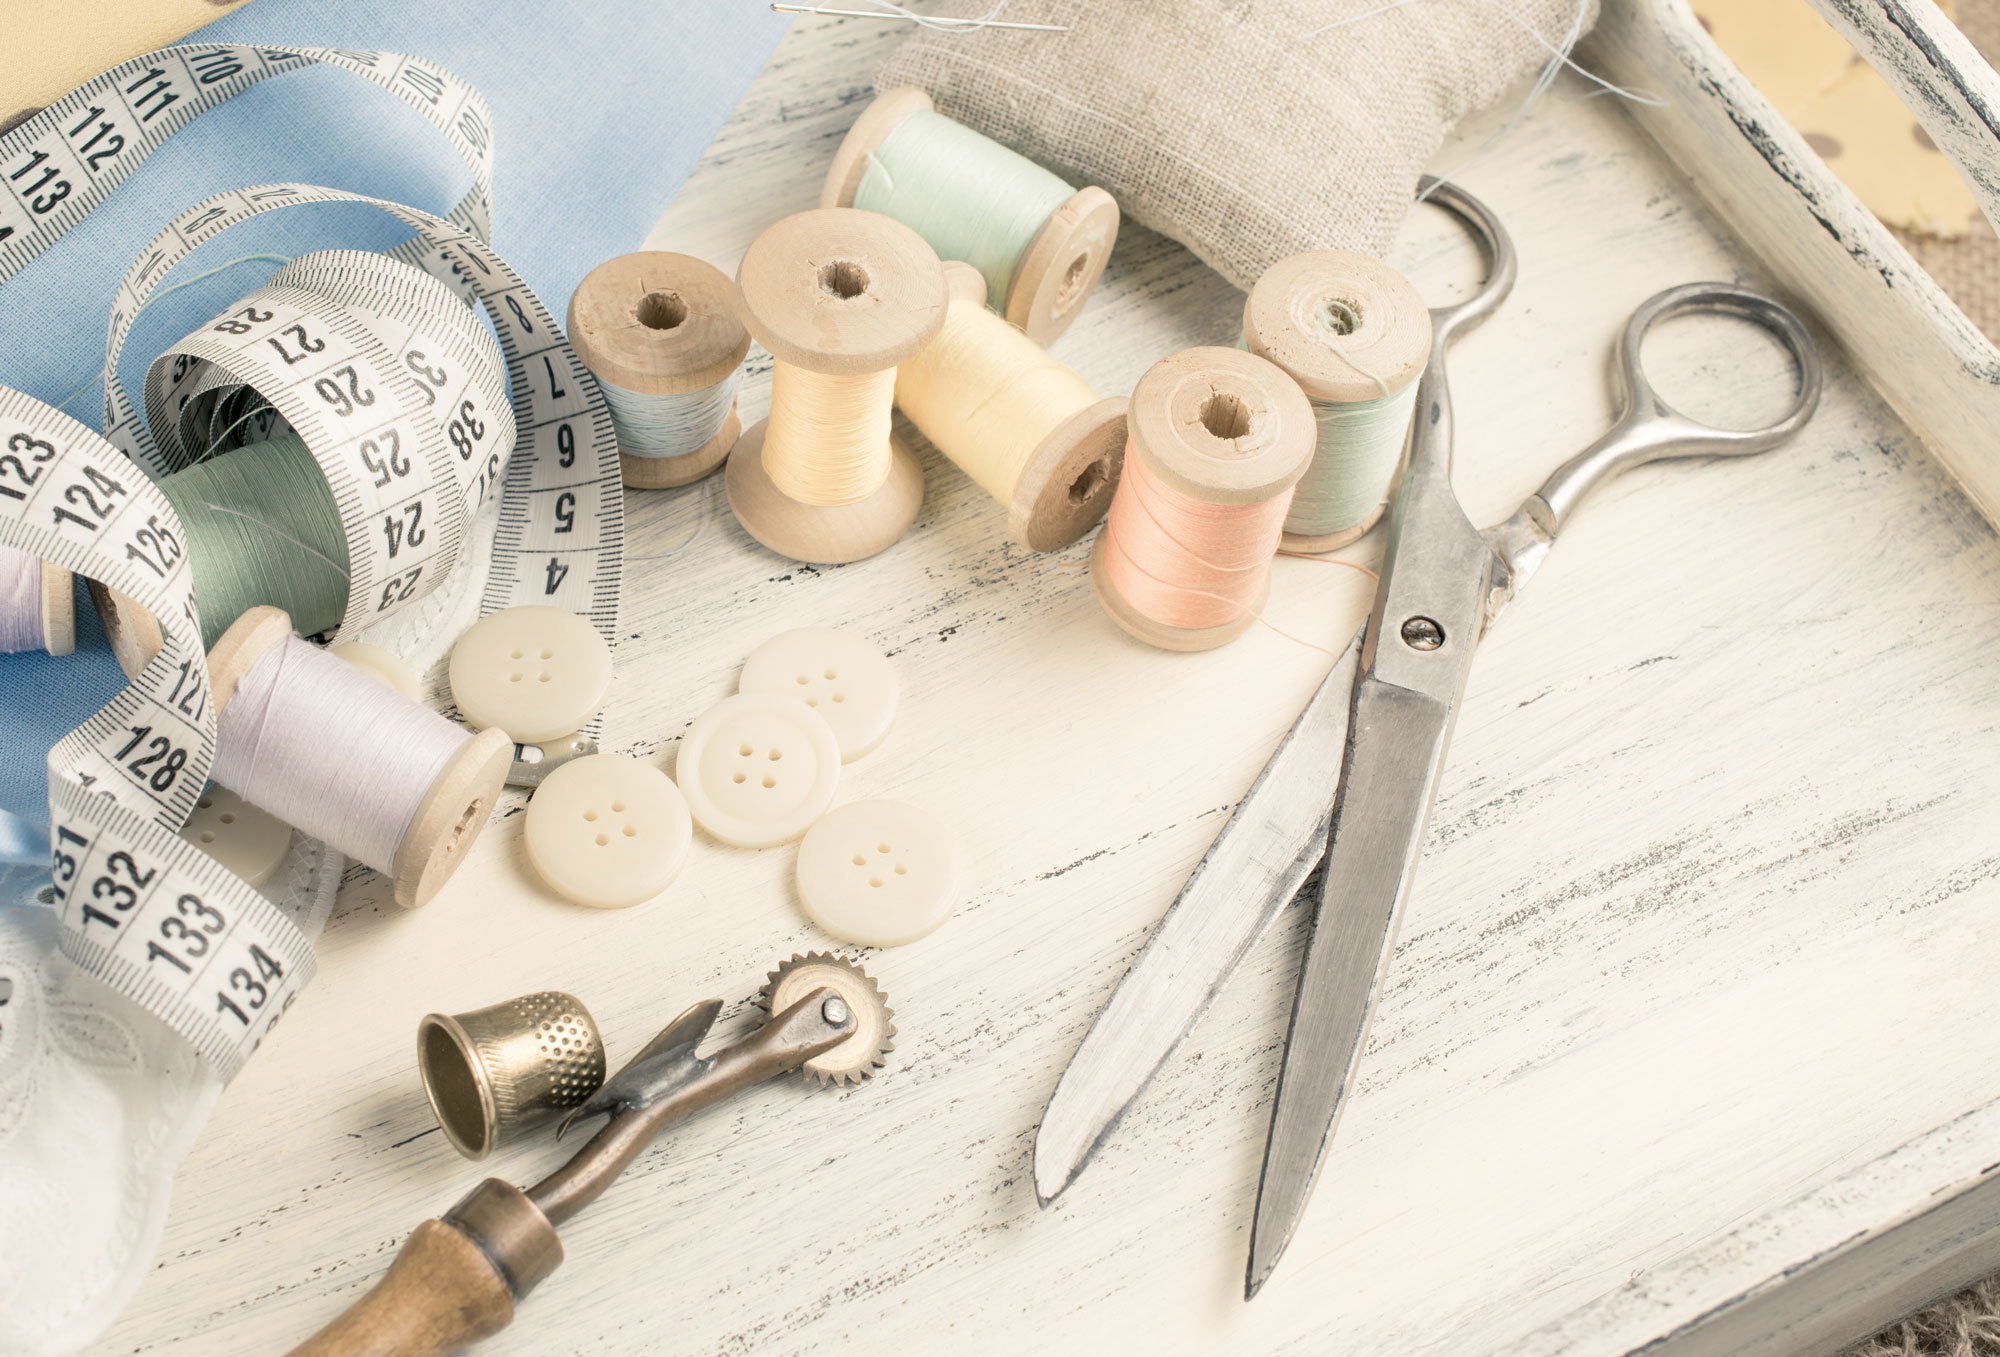 Нитки ремонт. Материалы для шитья. Принадлежности для кройки и шитья. Ткань ножницы нитки. Инструменты для шитья и рукоделия.